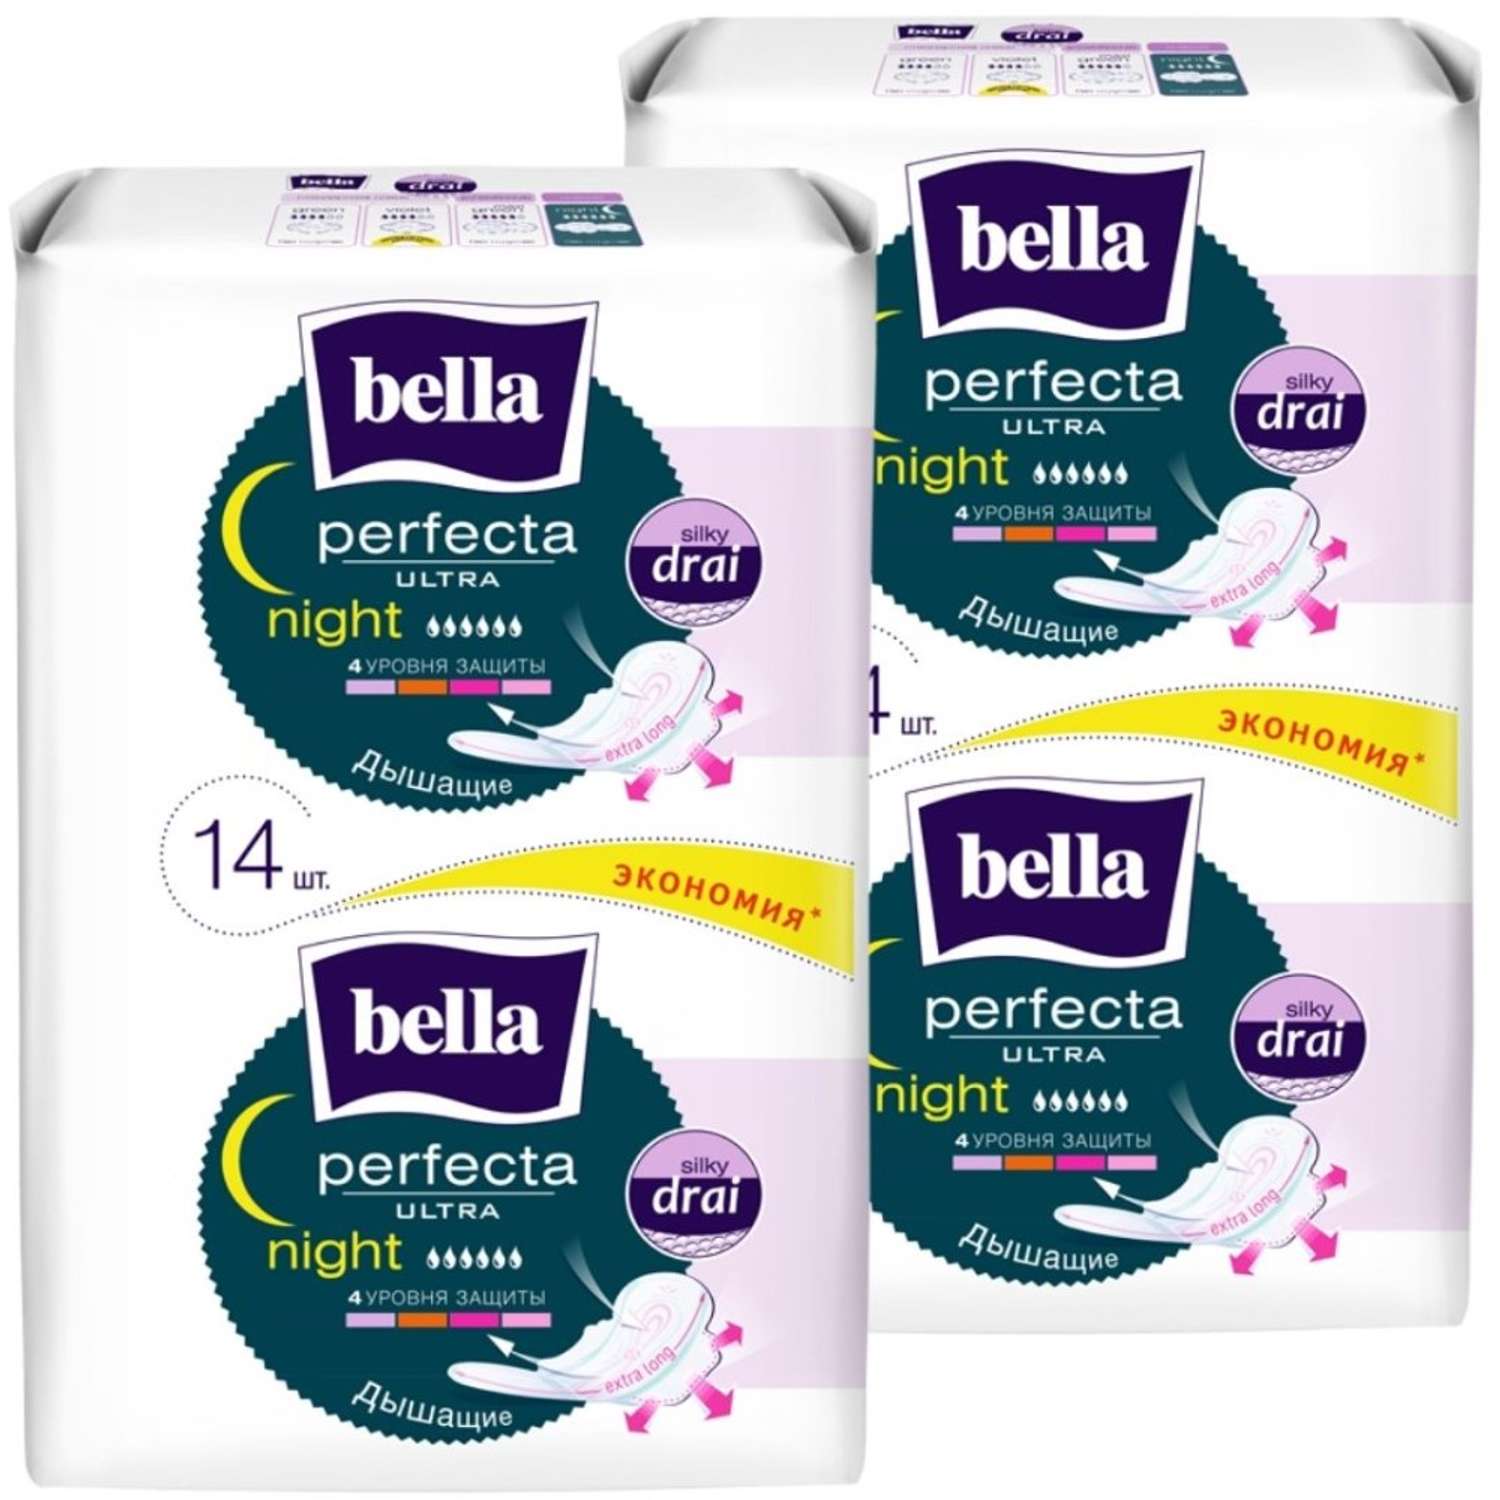 Прокладки ультратонкие BELLA Perfecta Ultra Night silky drai 14 шт х 2 упаковки - фото 1